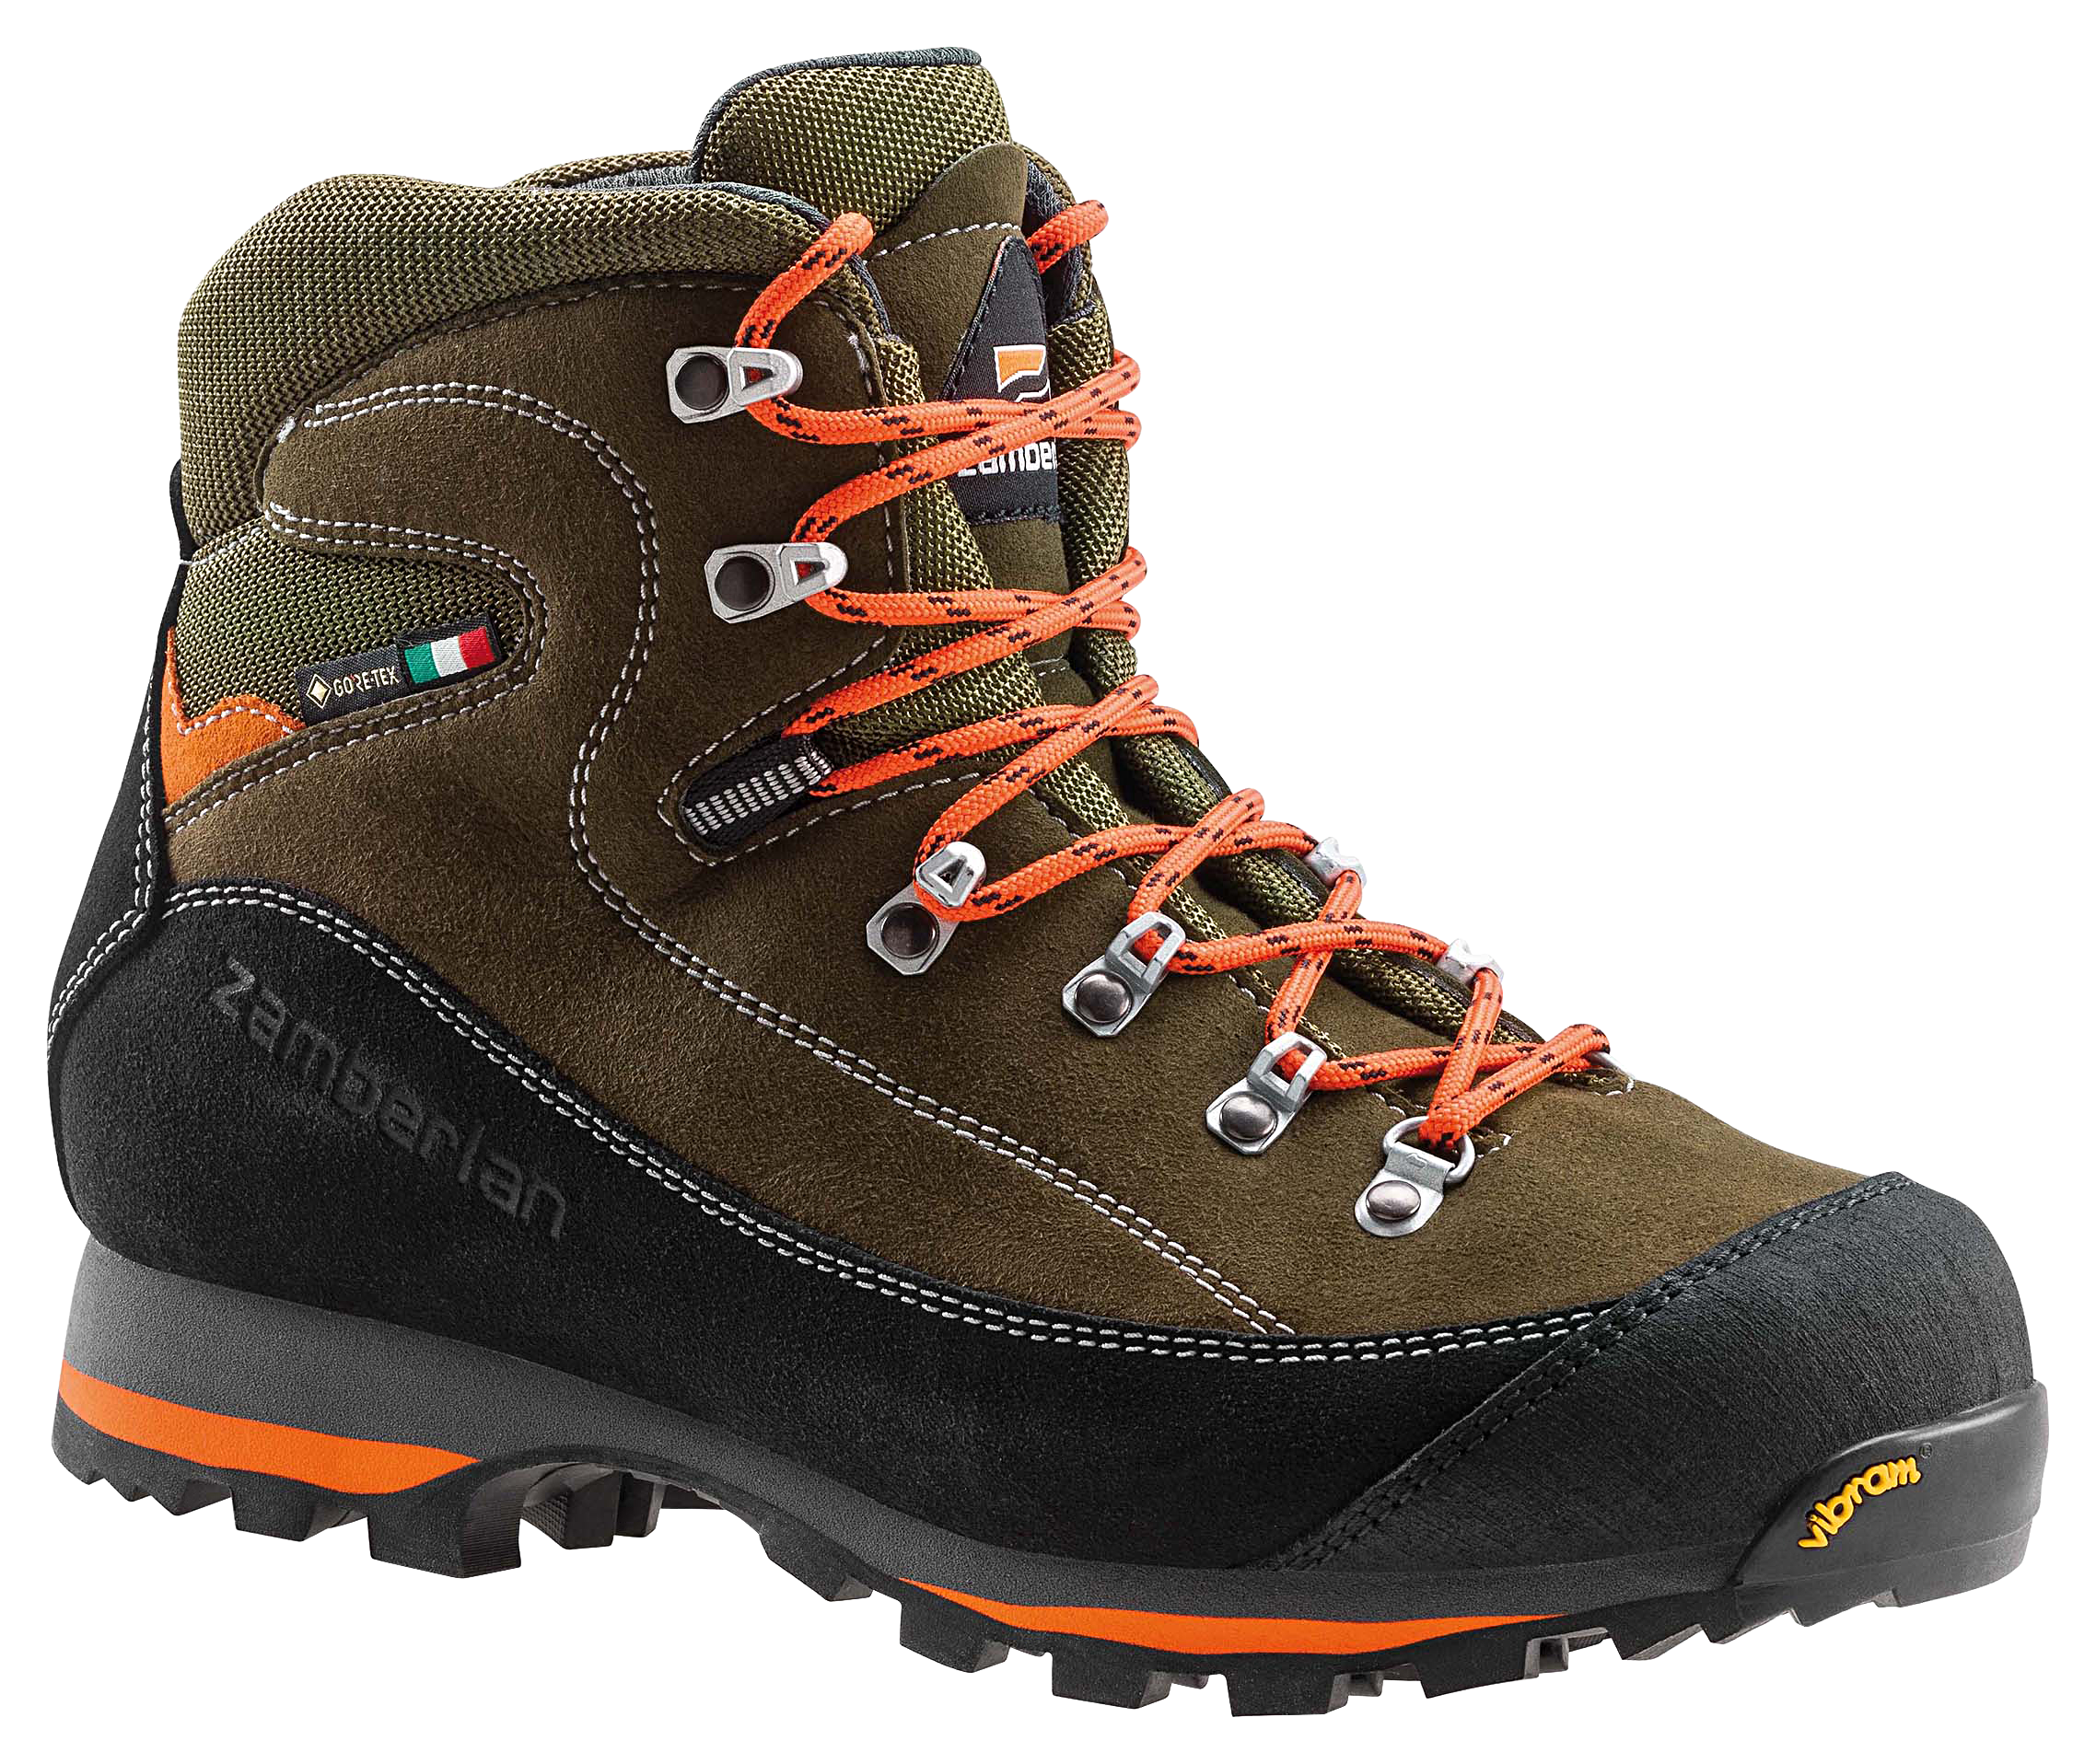 Zamberlan 700 Sierra GTX Waterproof Hunting Boots for Men - Forest - 8.5M